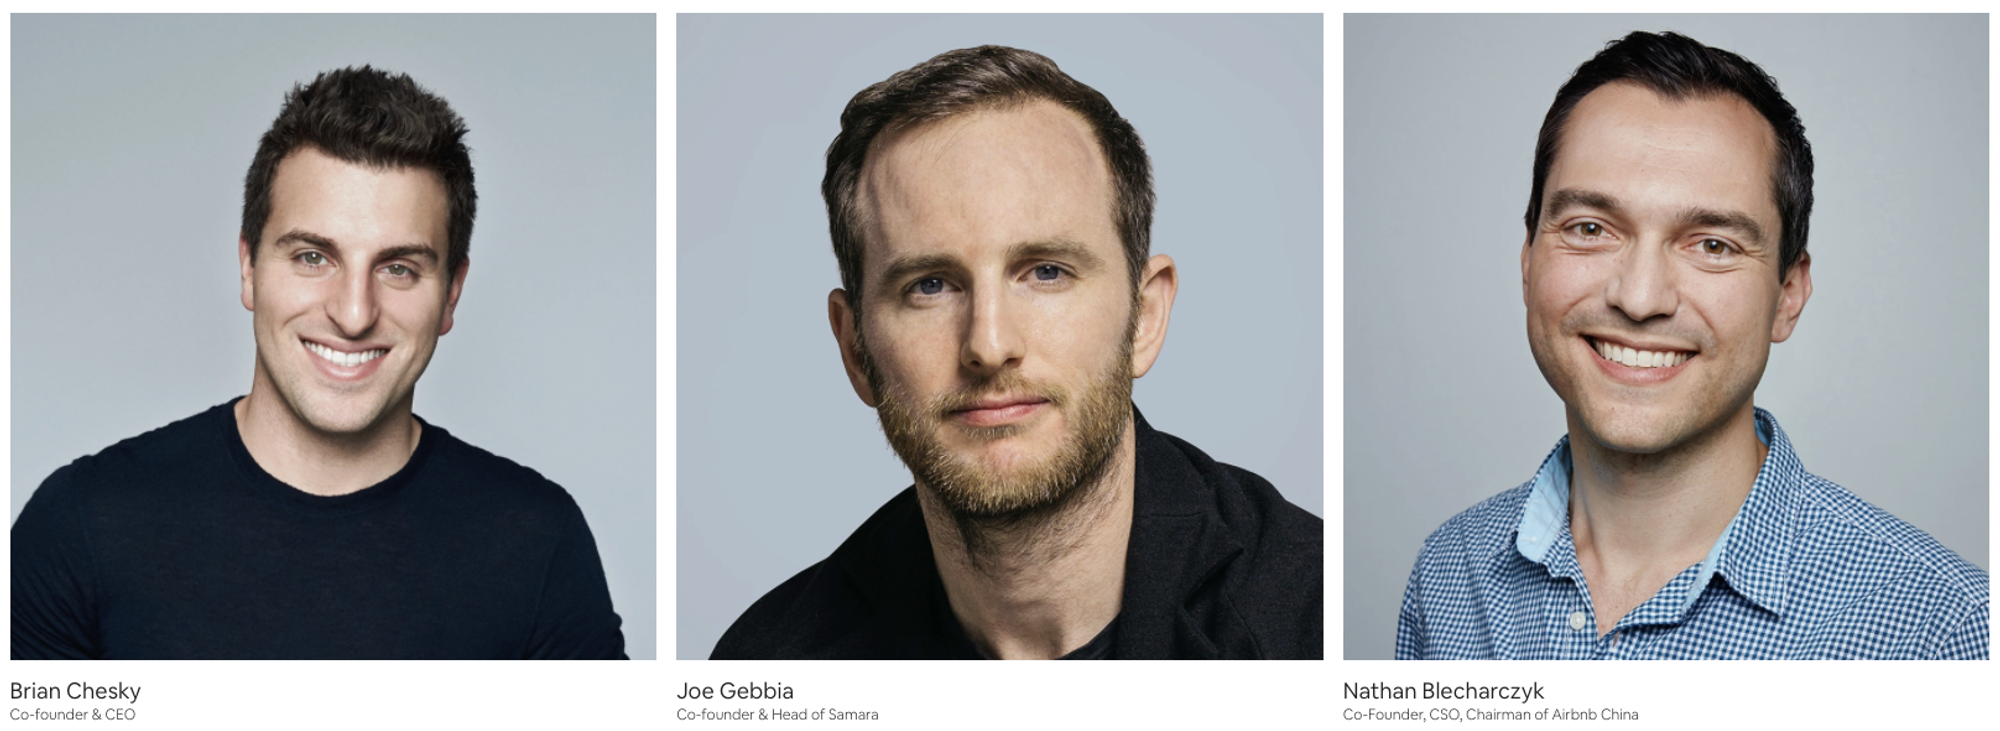 Founding team van Airbnb: Brian Chesky, Joe Gebbia en Nate Blecharczyk